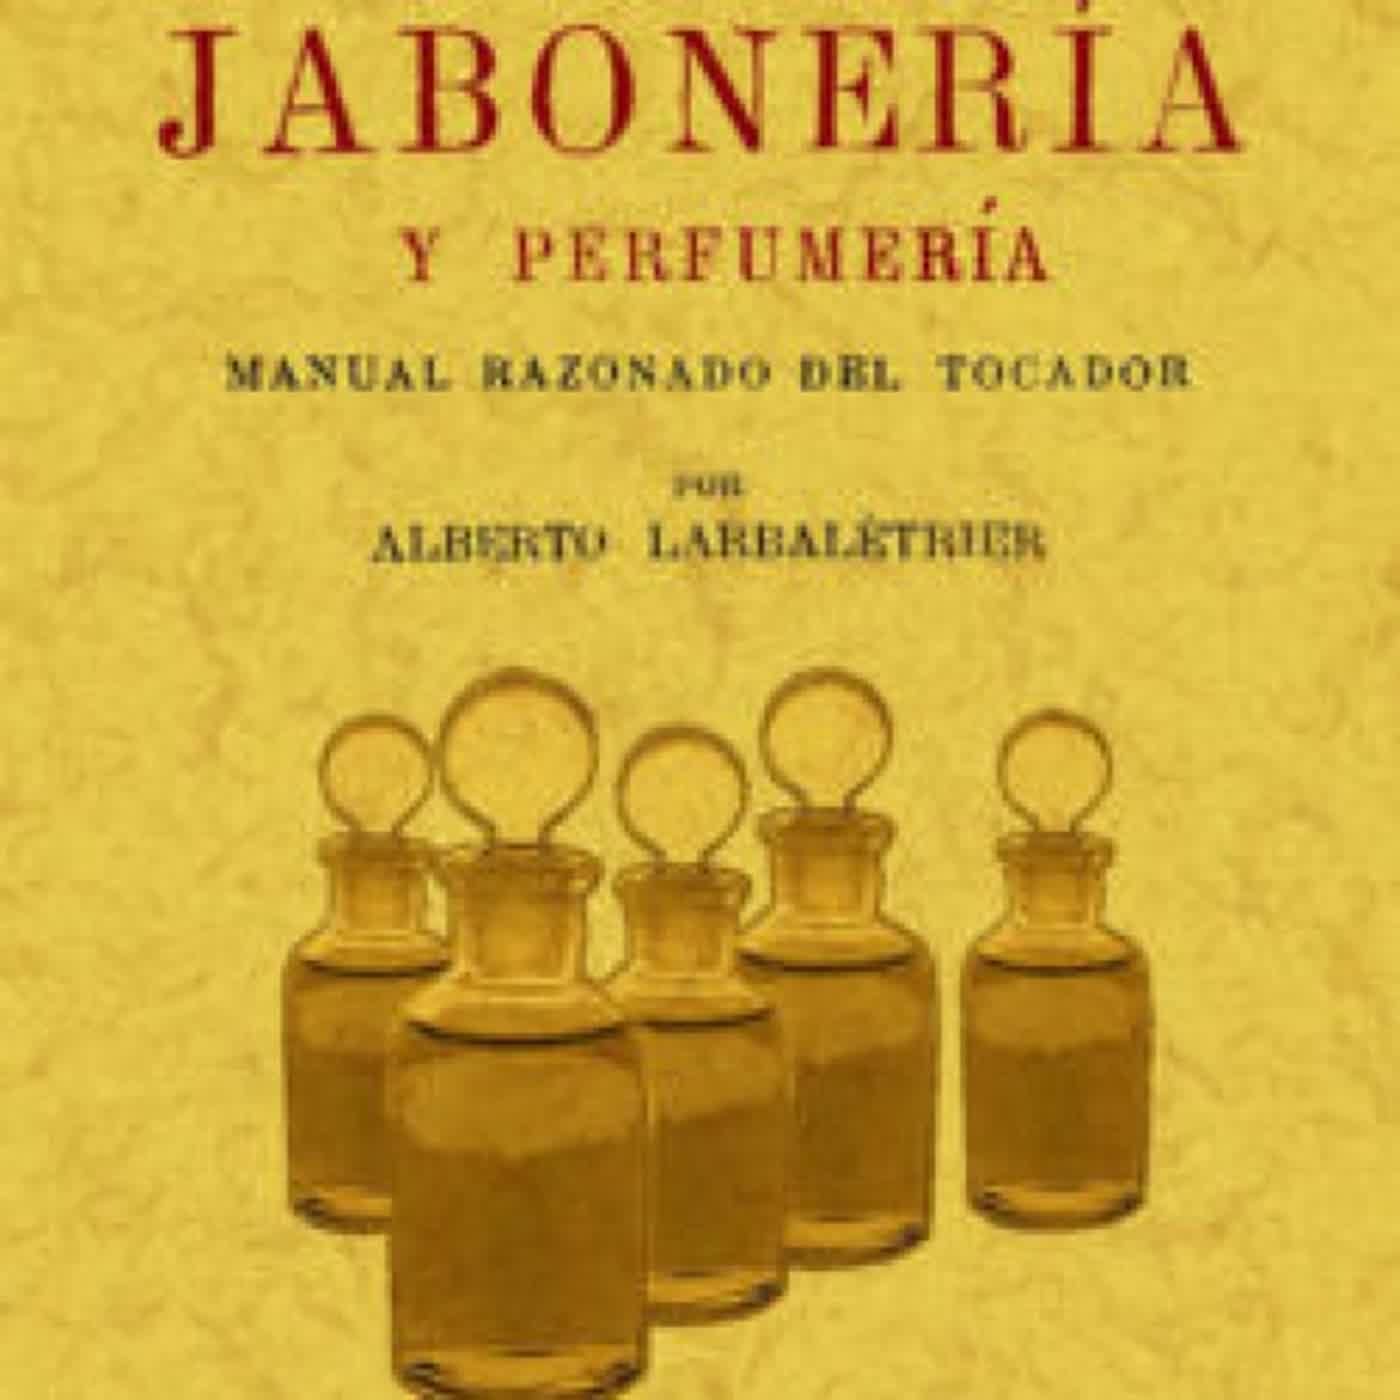 [PDF] TRATADO PRACTICO DE JABONERIA Y PERFUMERIA (ED. FACSIMIL) descargar gratis